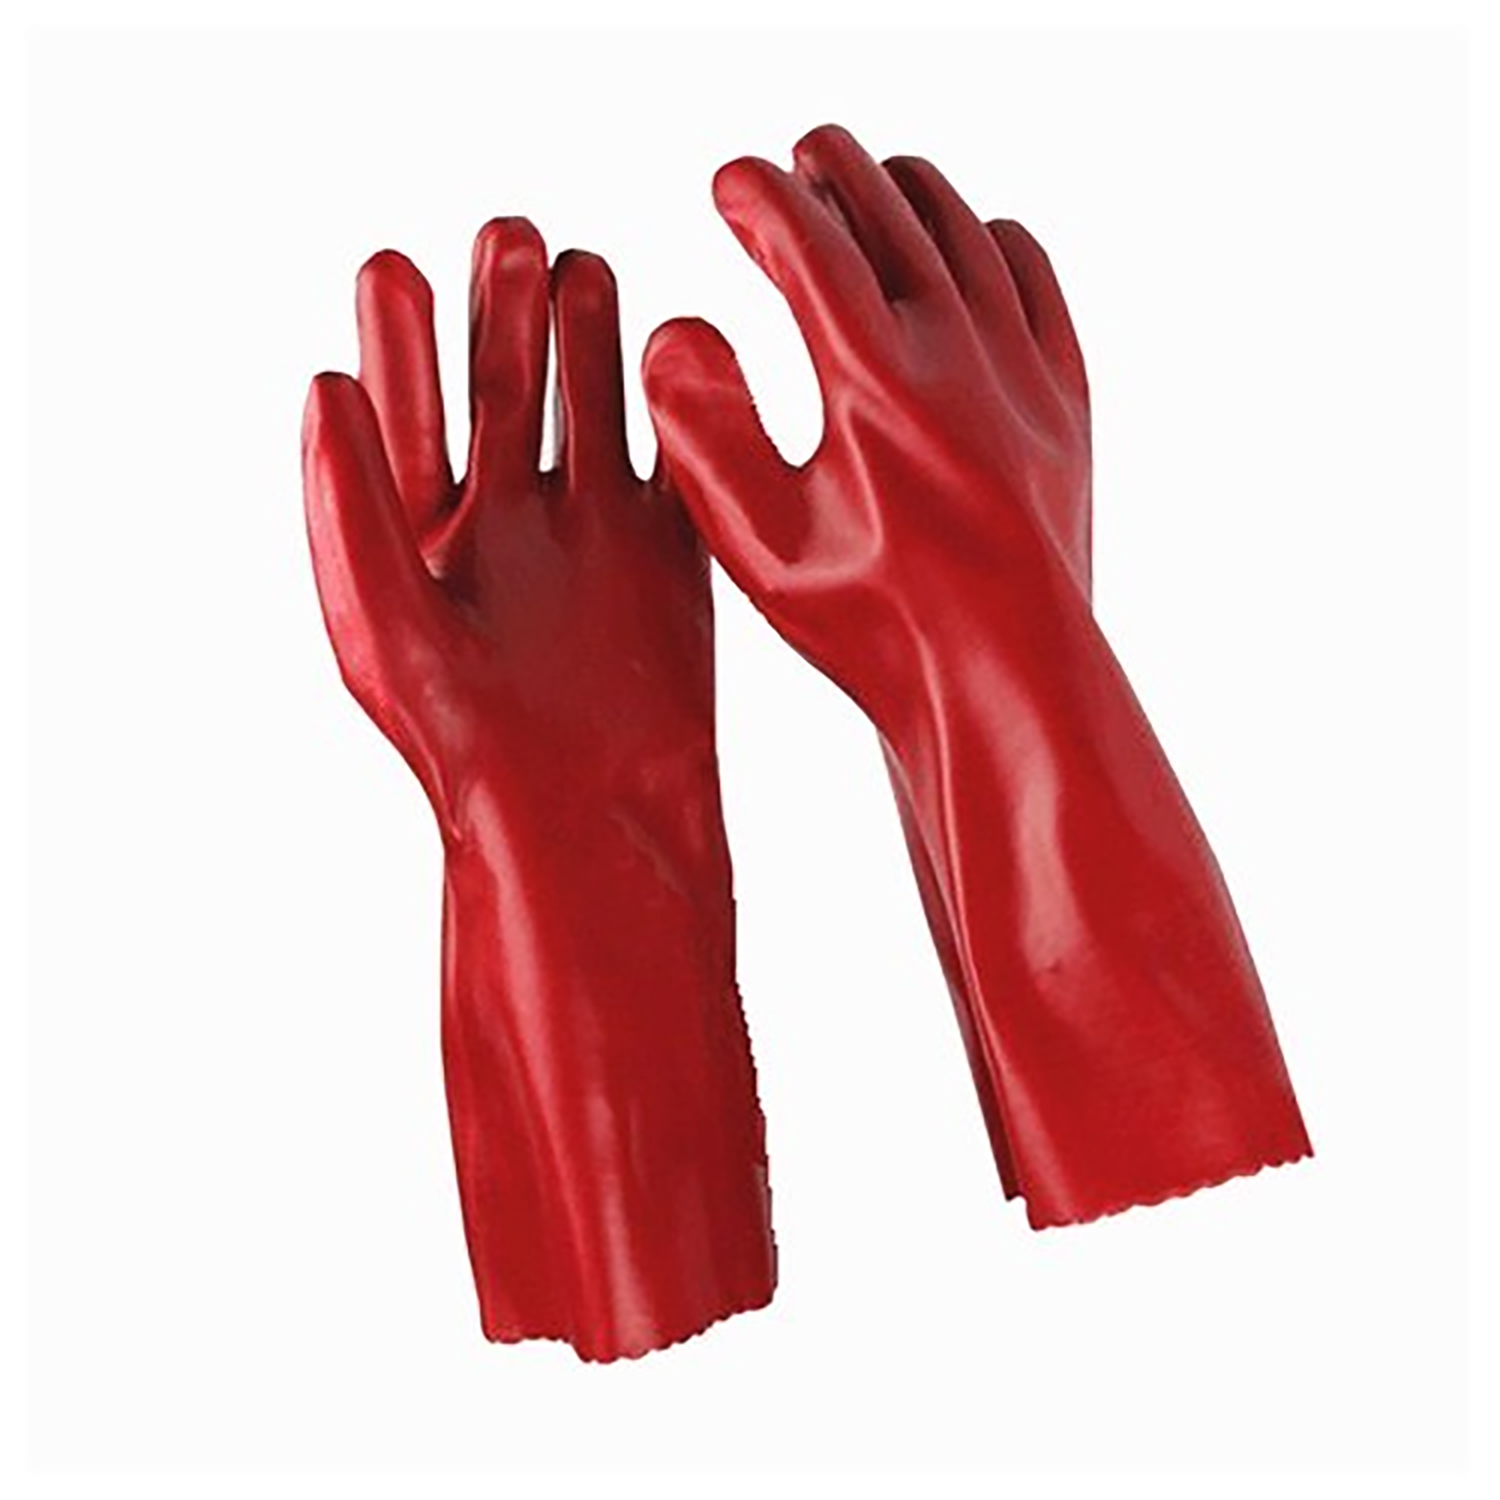 Chemical glove